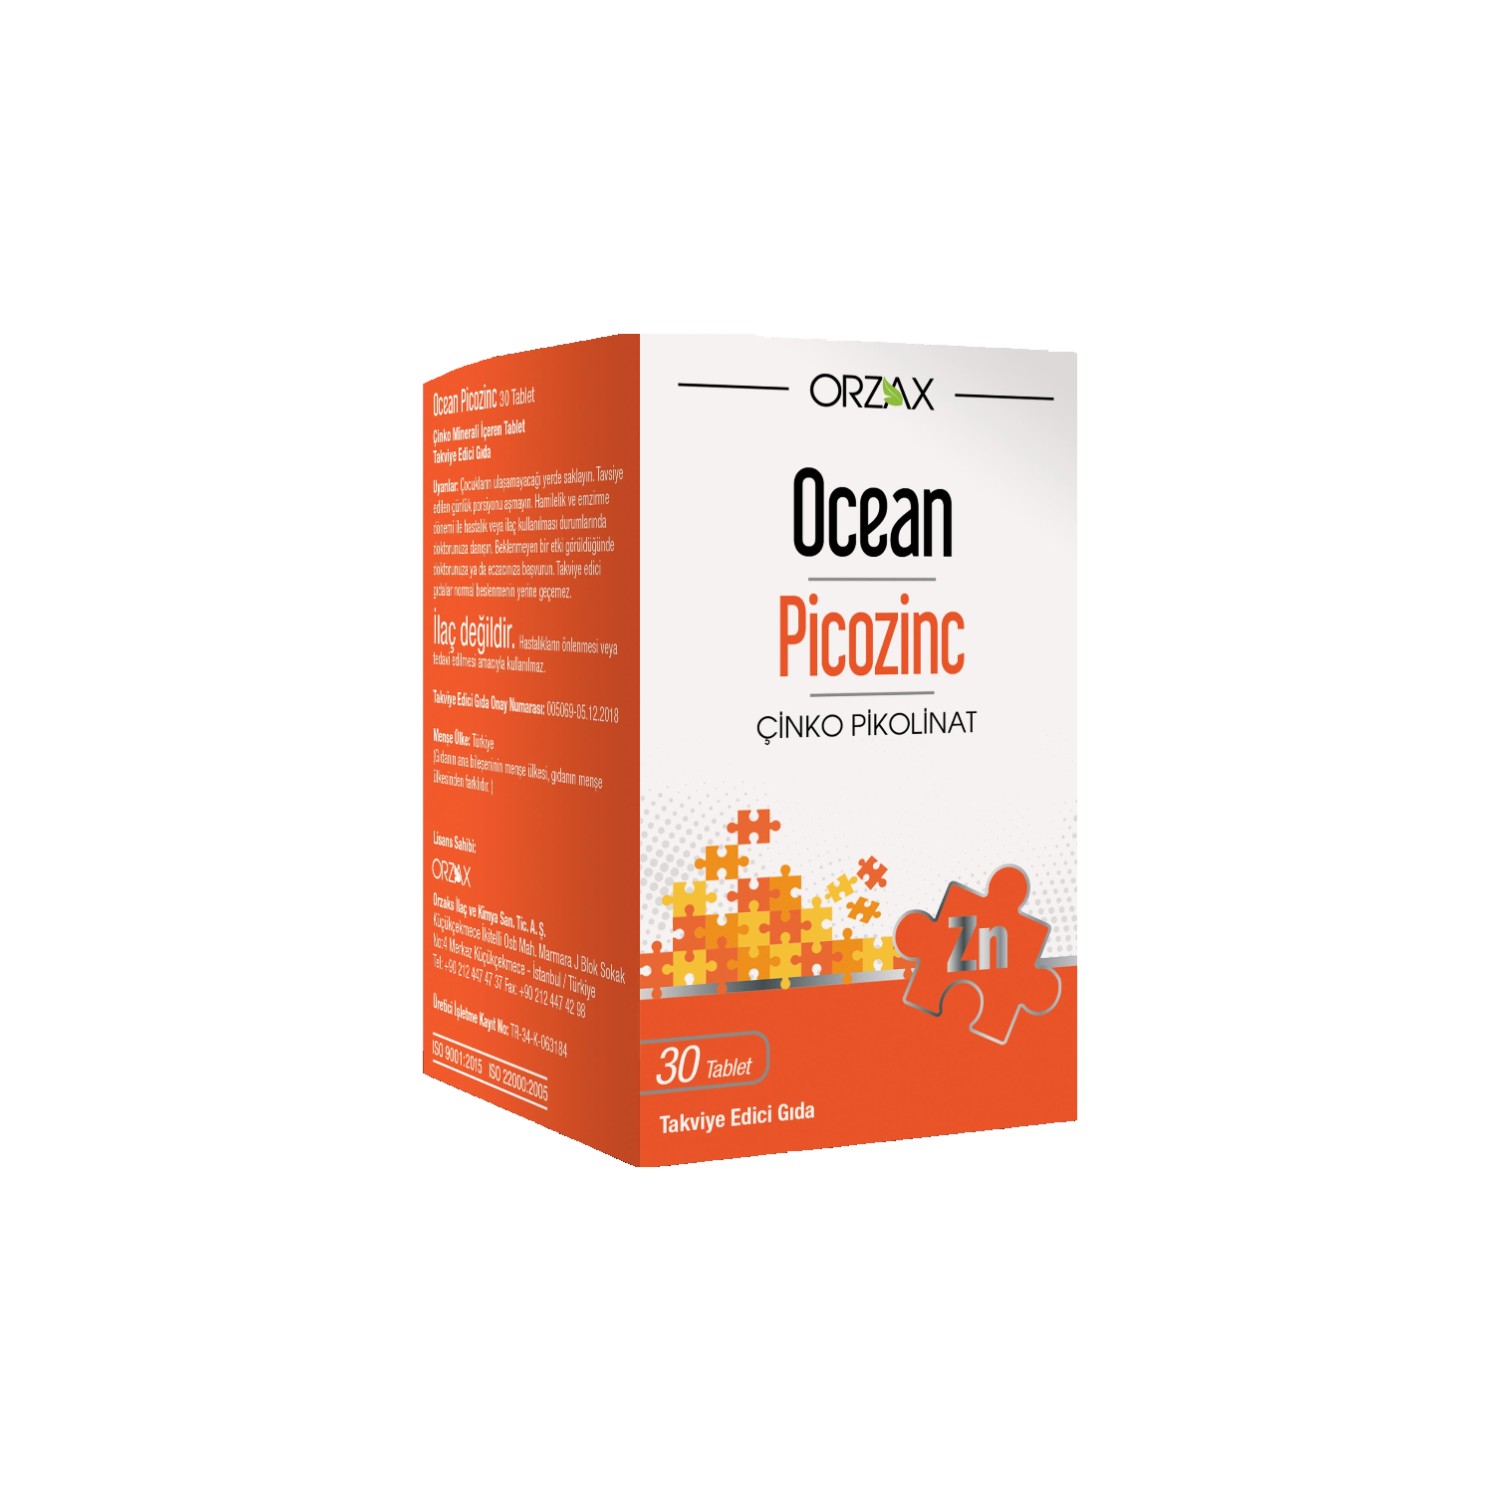 Пищевая добавка Orzax Ocean Picozinc Supplementary Food, 4 упаковки по 30 капсул пикоцинк ocean 30 таблеток цитрат магния voonka 200 мг 62 таблеток